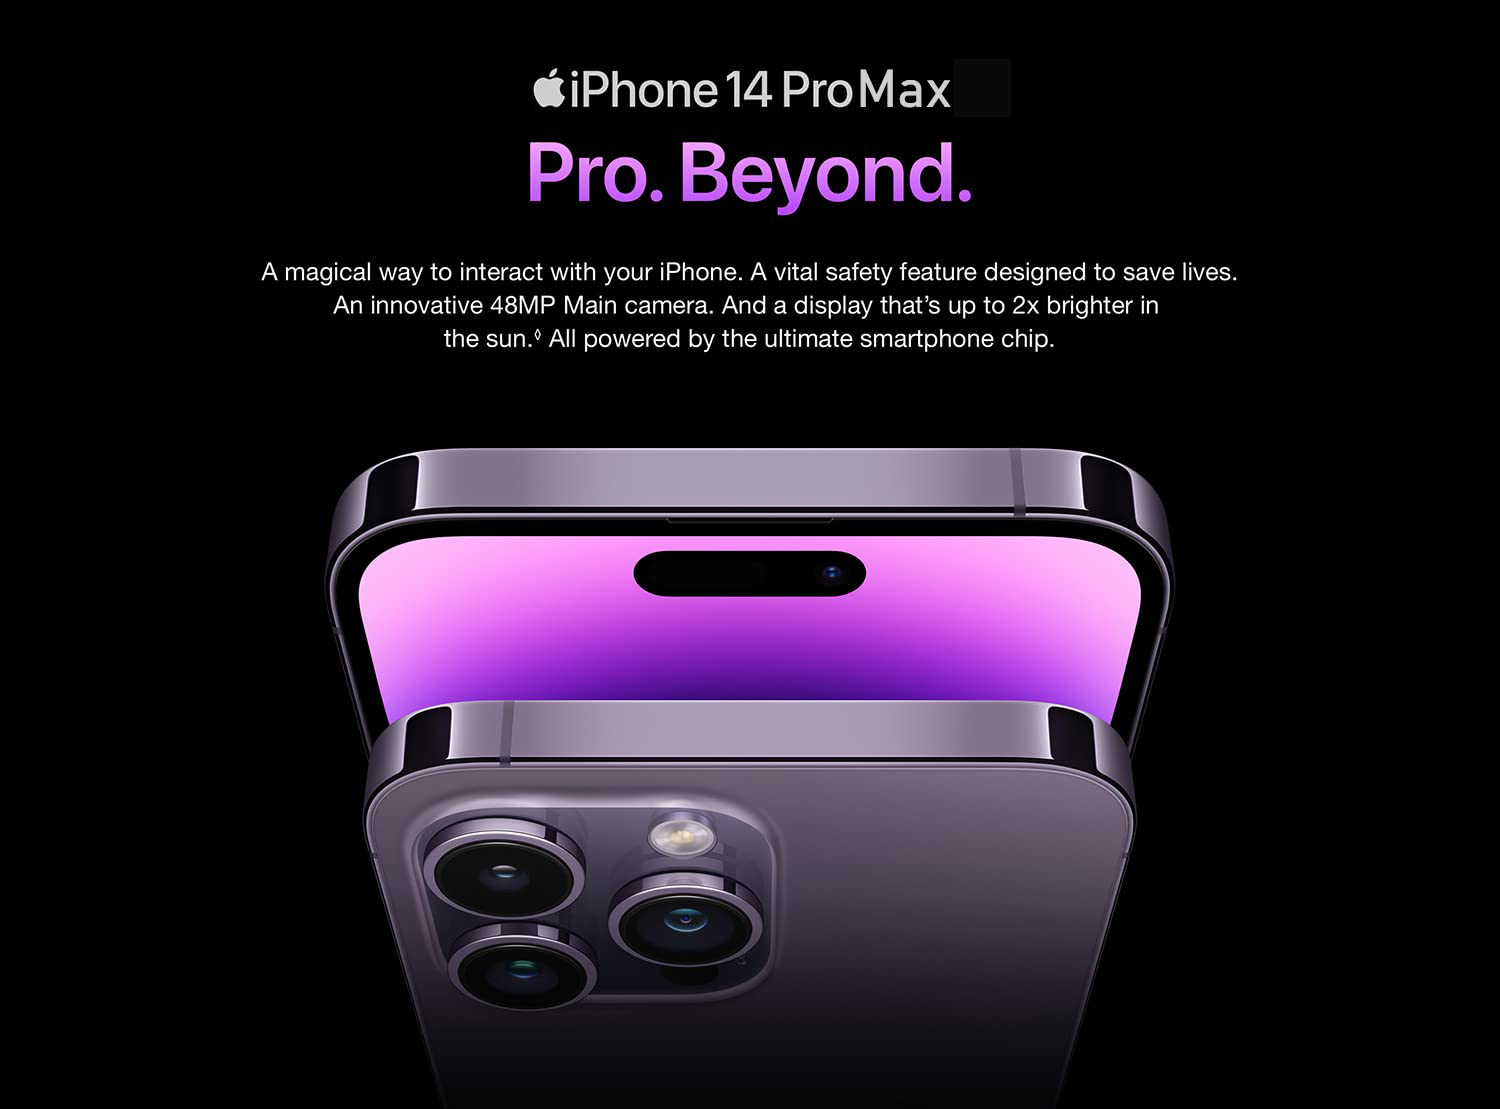 iphone 14 pro max | apple iphone 14 pro max | iphone 14 pro max price in dubai | iphone 14 pro max price